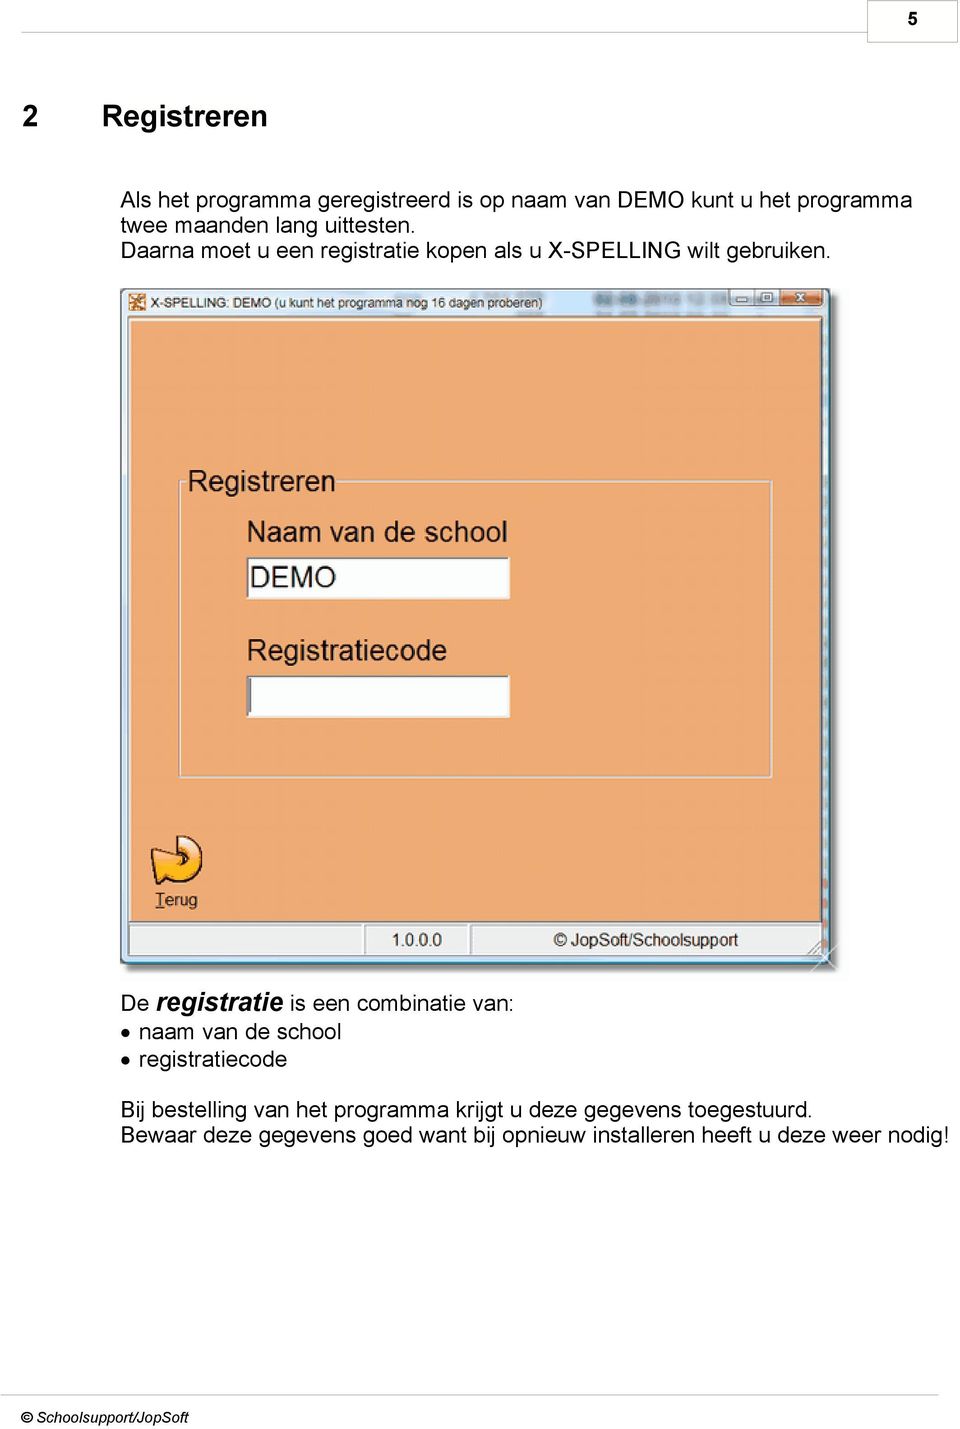 De registratie is een combinatie van: naam van de school registratiecode Bij bestelling van het